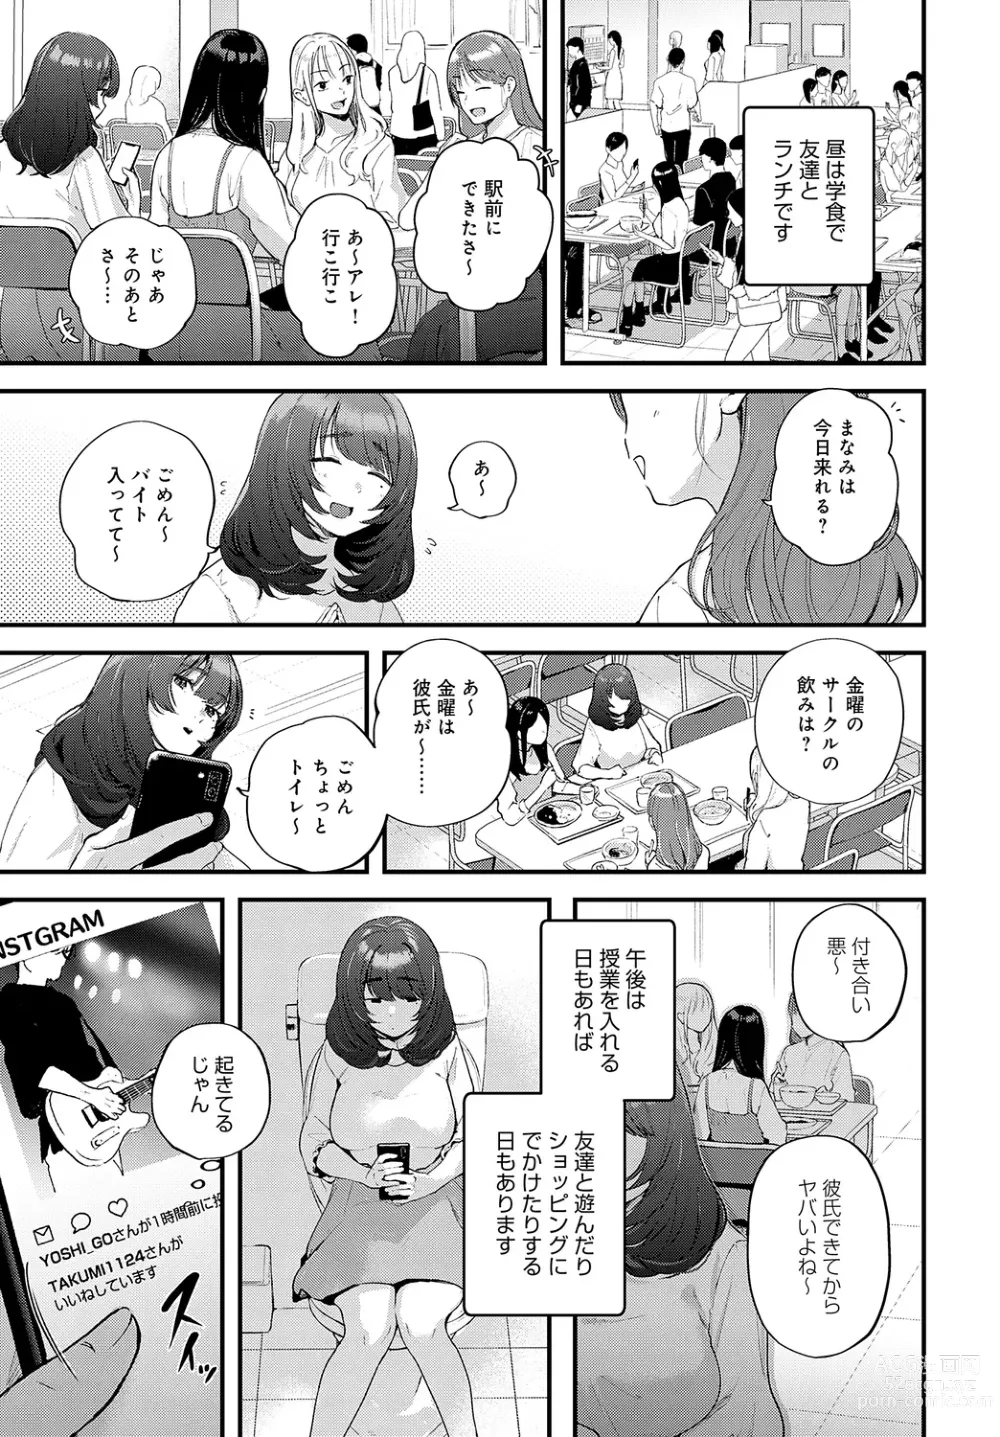 Page 29 of manga COMIC Anthurium 2023-05